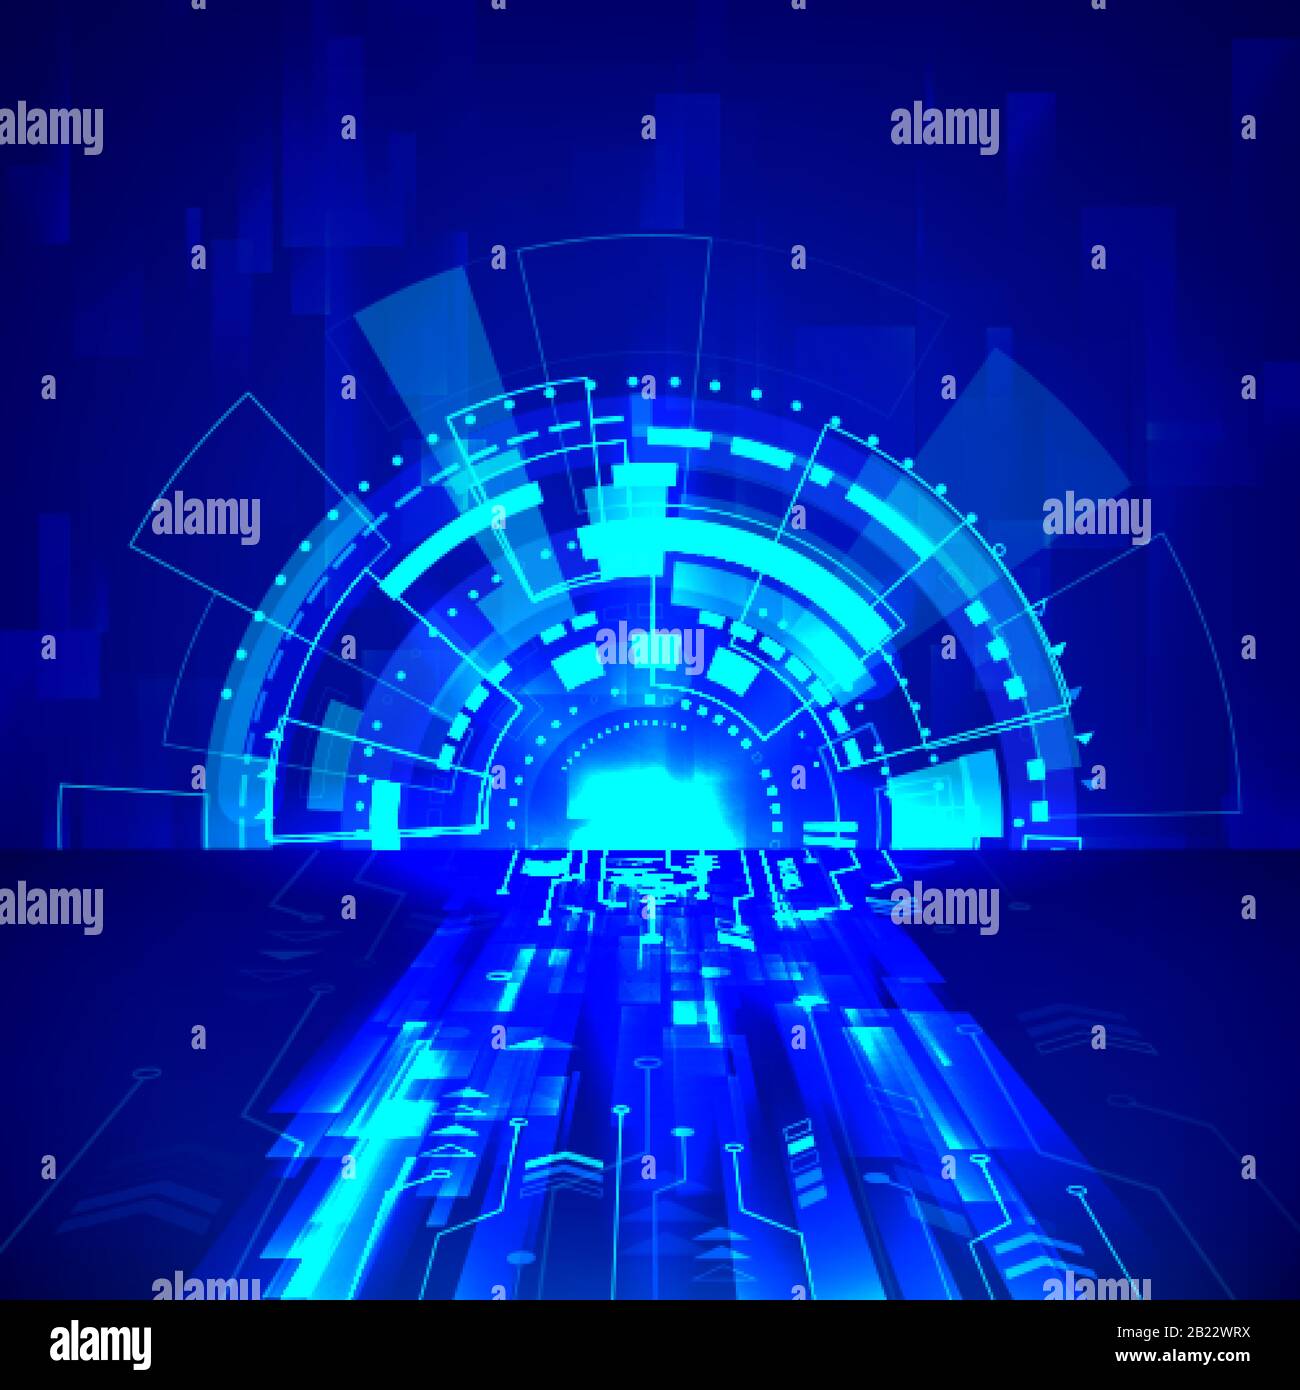 Abstrakter Hintergrund der Sci-Fi-Technologie. Futuristisches Cyber-System in blauen Farben. Vektorgrafiken Stock Vektor